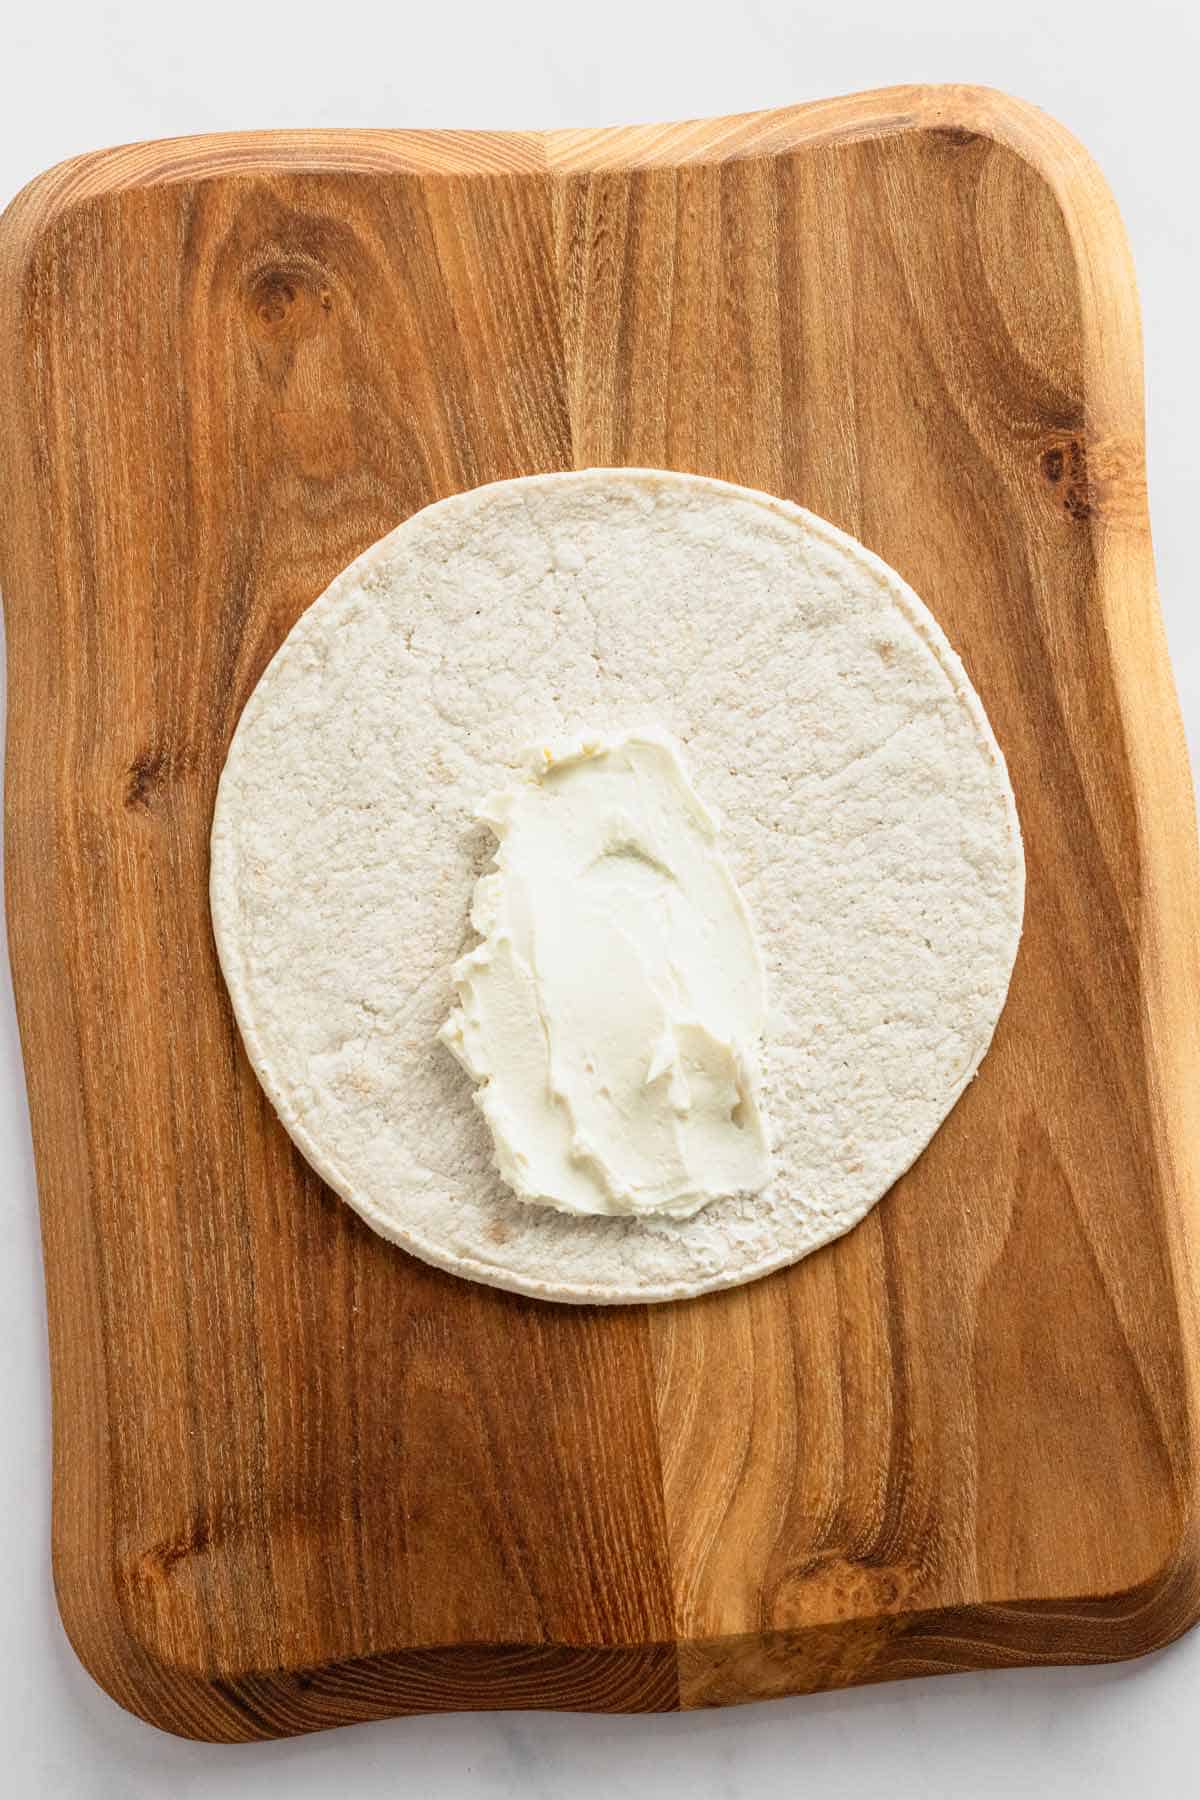 cream cheese on tortilla wrap.